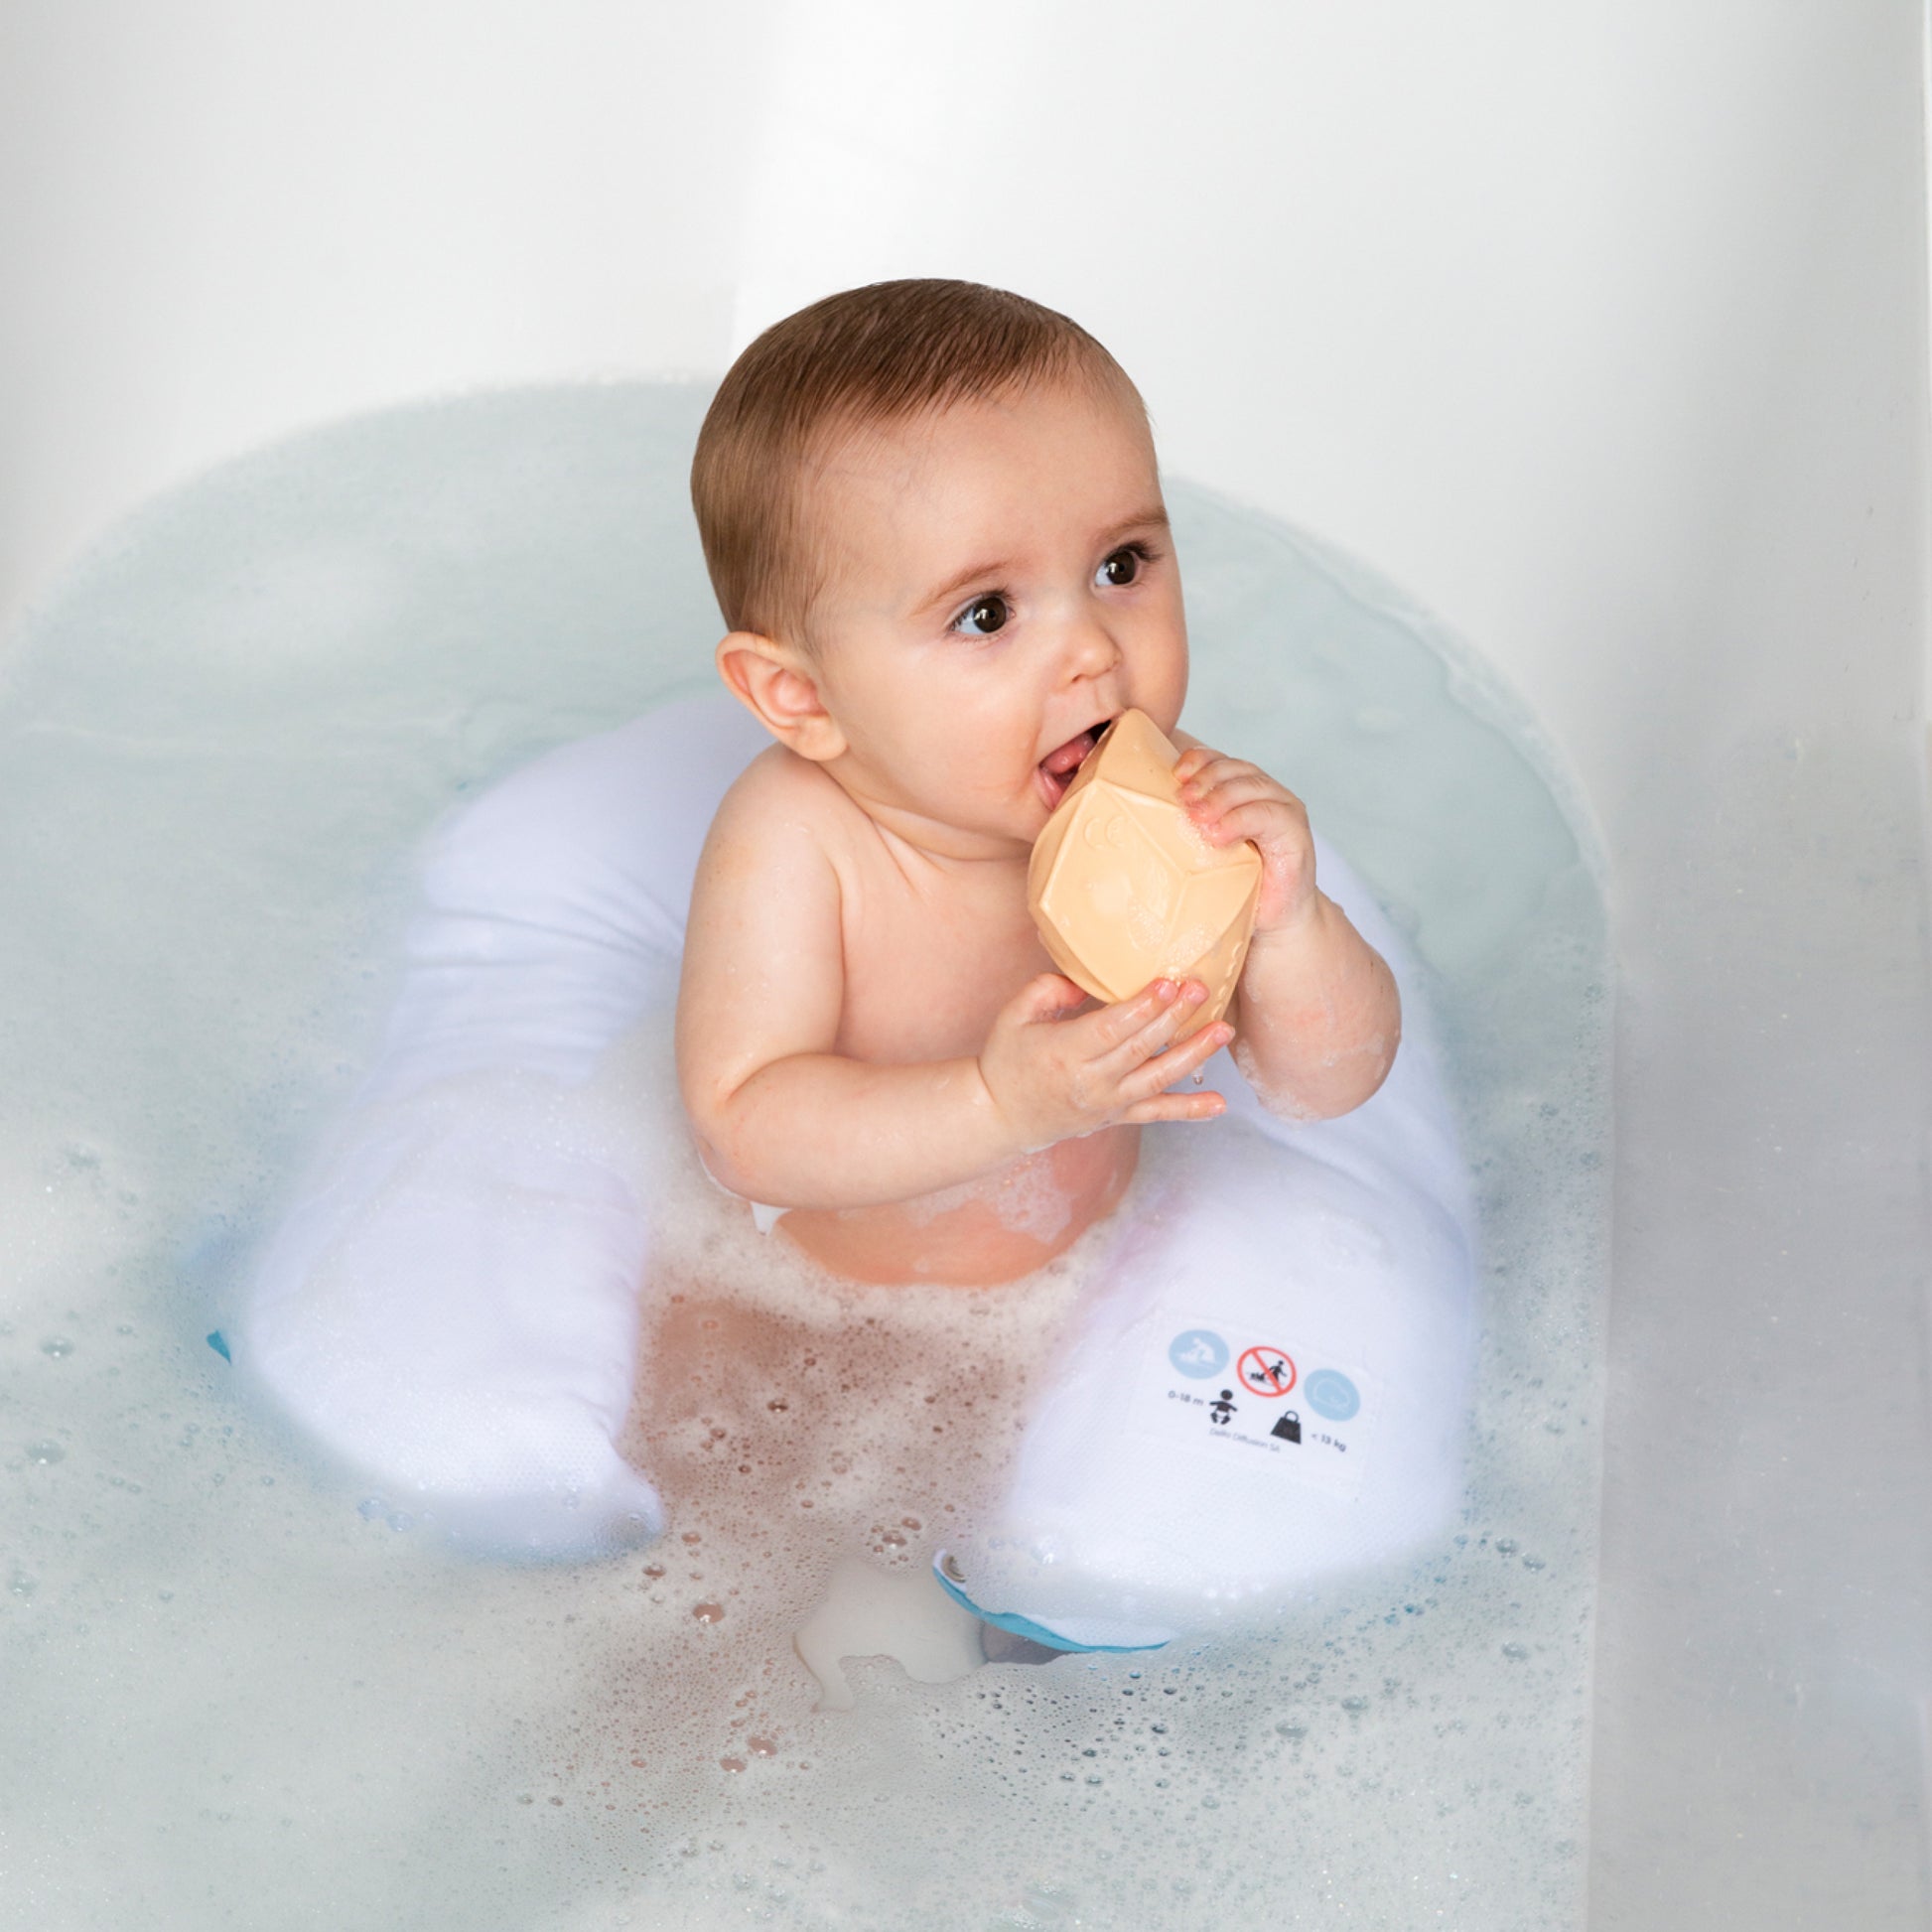 Coussin de bain pour baigner votre bébé les mains libres. Il peut s'asseoir ou se coucher en toute sécurité dans l'eau. Sans danger pour le bébé et sans douleur pour les parents.